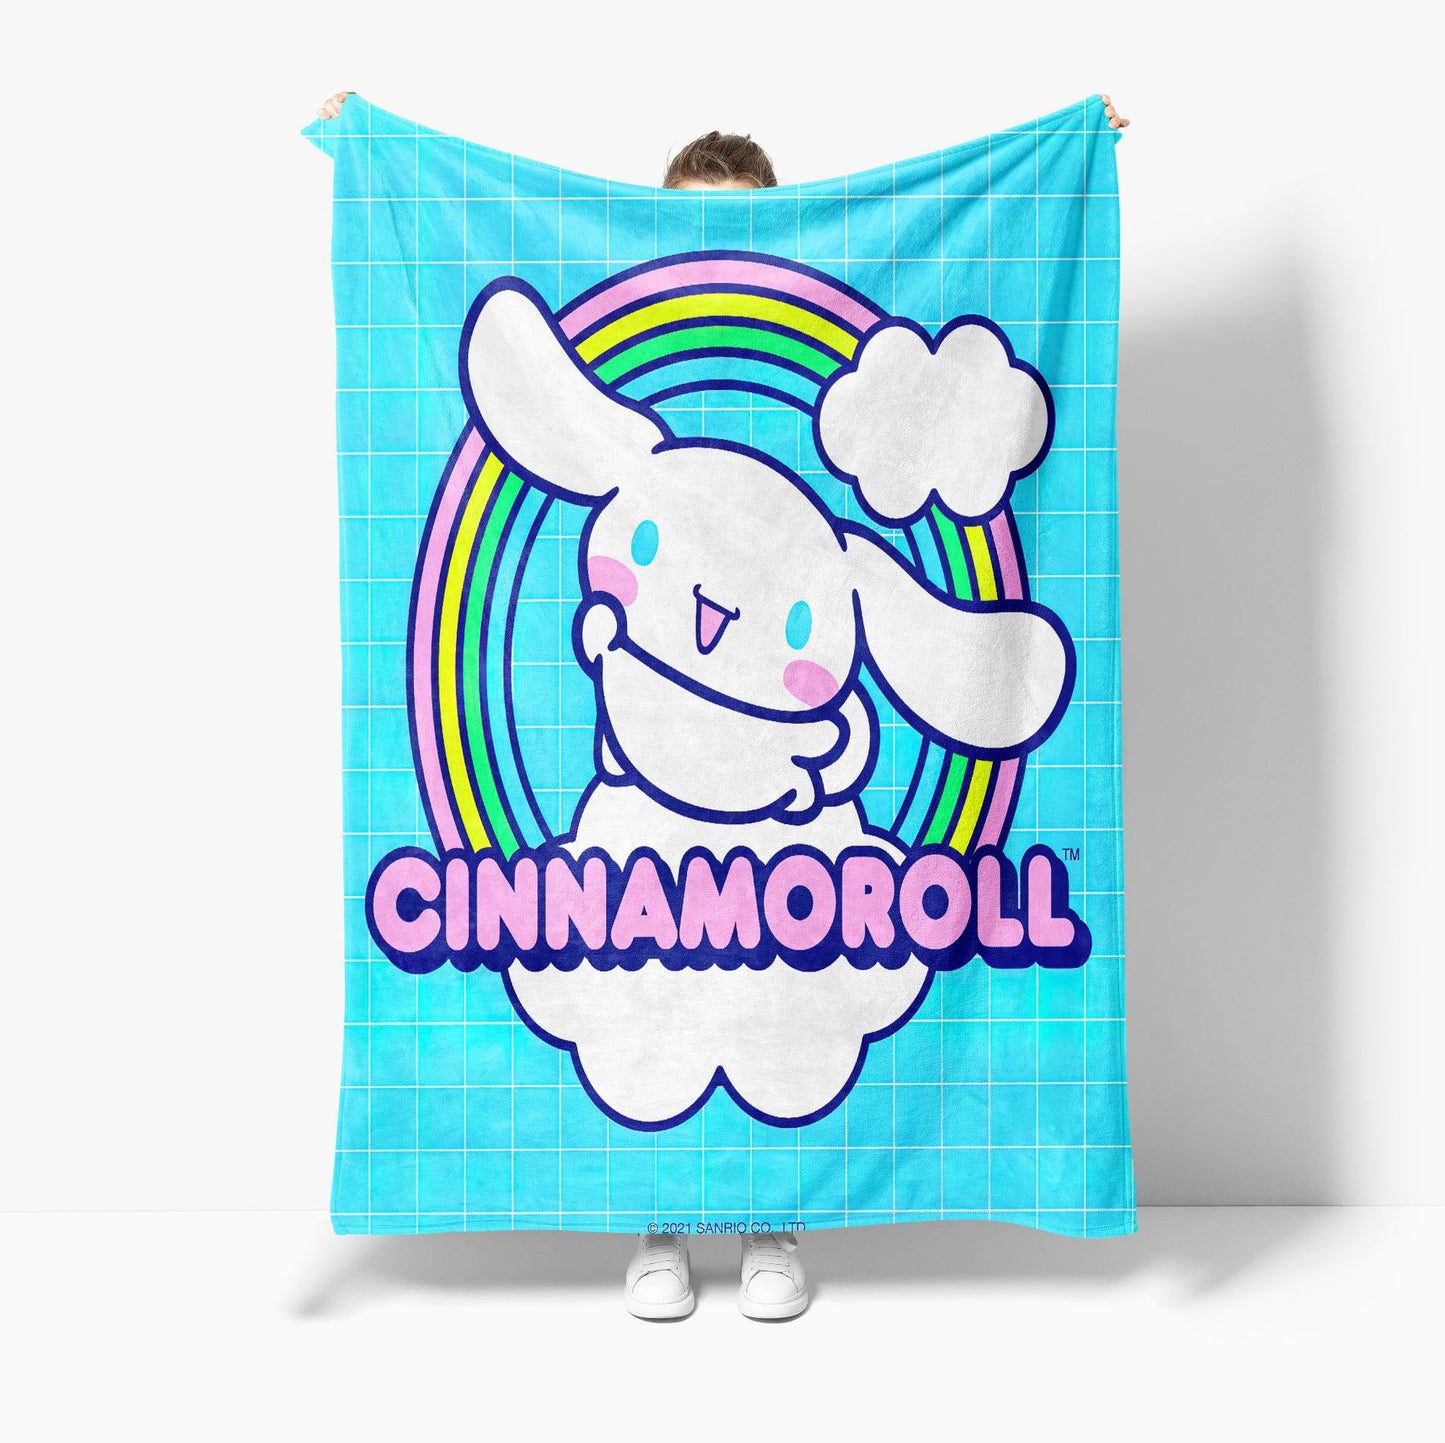 Pre-order Cinnamoroll Blanket